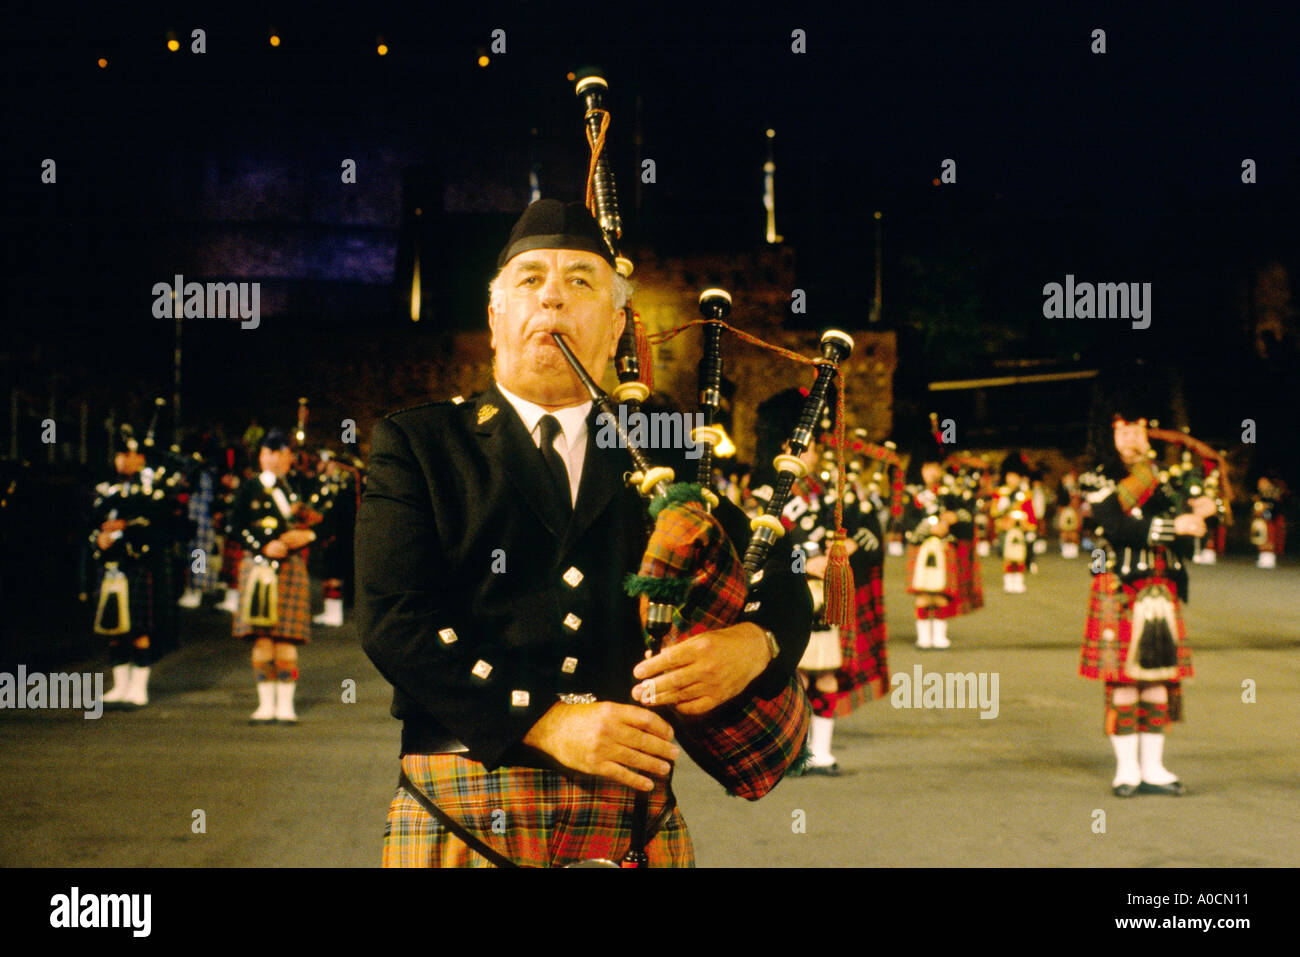 Piper riproduzione di cornamusa scozzese sulla spianata del castello di Edimburgo a annuale militare Edinburgh Tattoo, Scotland, Regno Unito Foto Stock